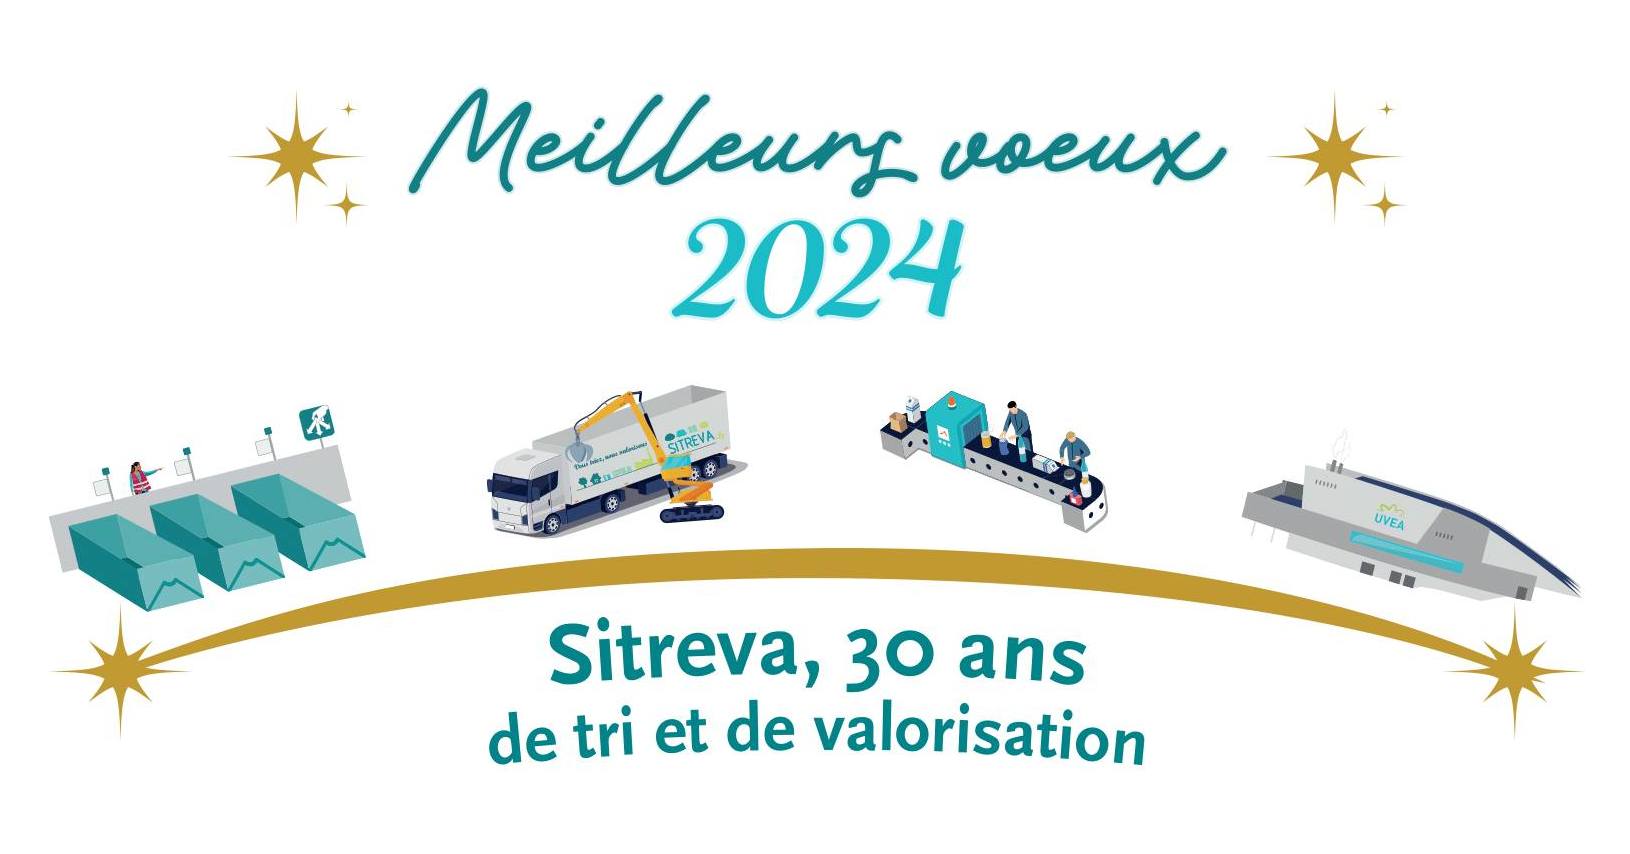 Sitreva vous souhaite une bonne année 2024 !